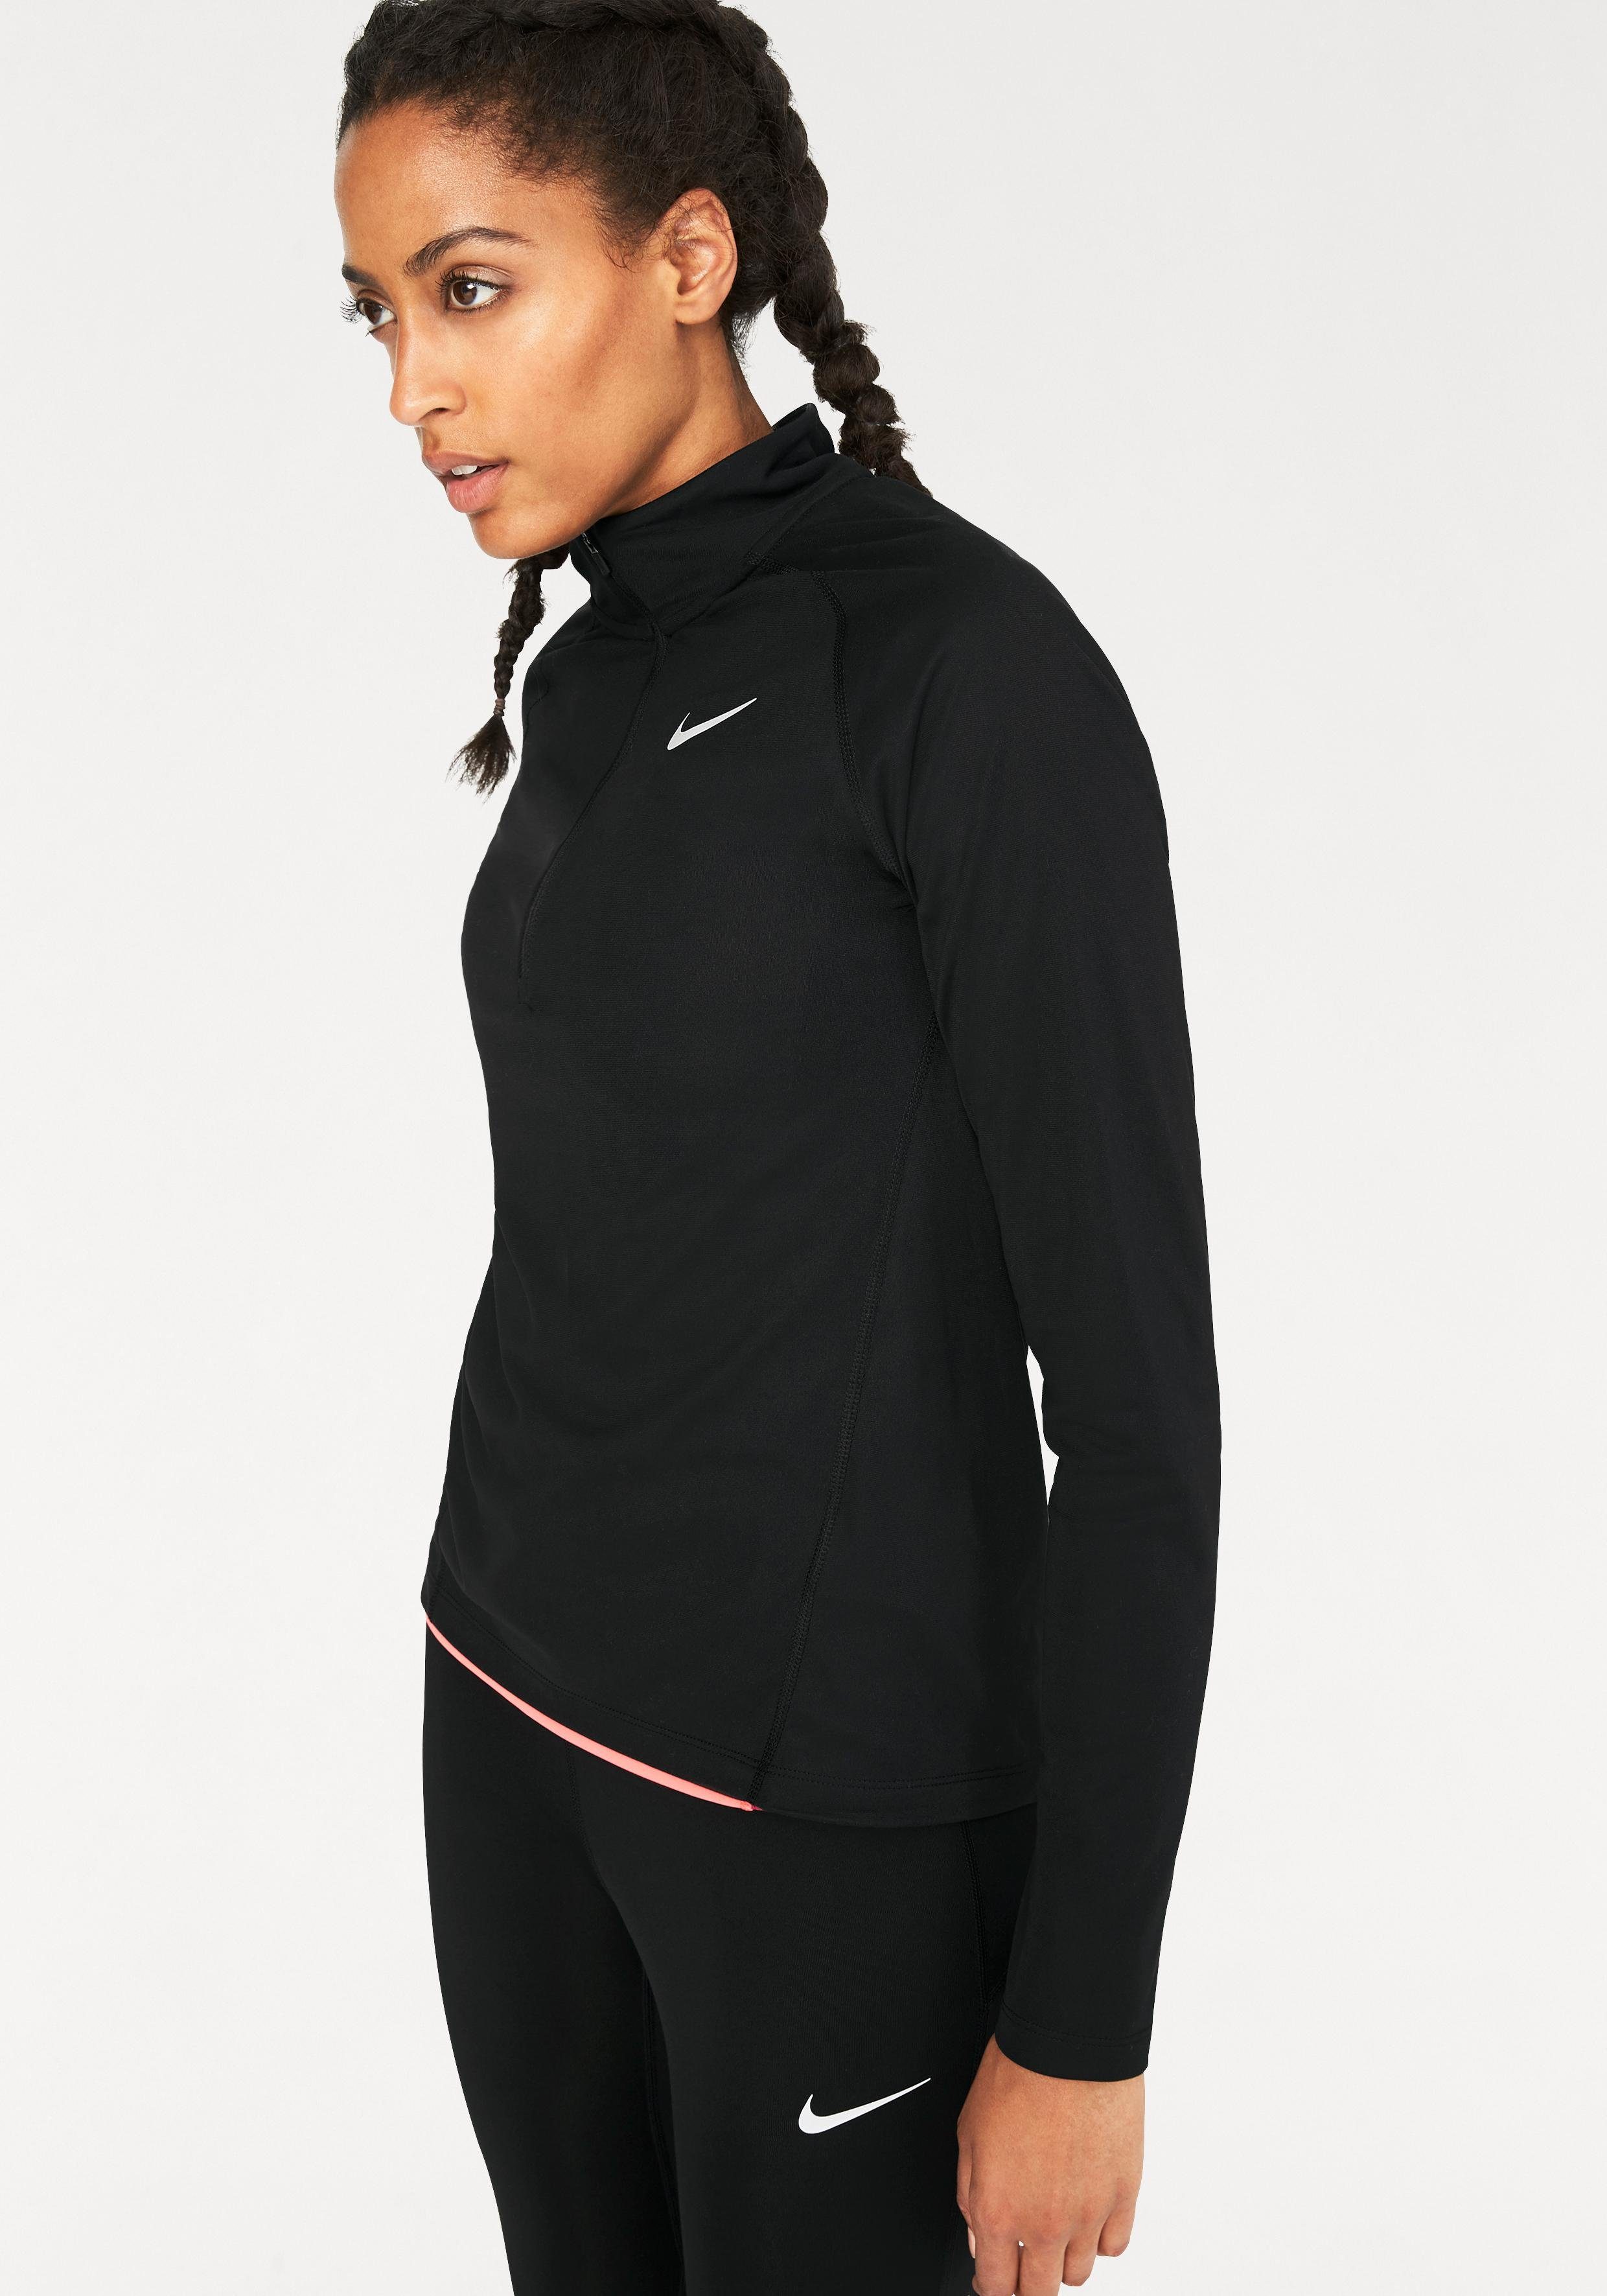 Nike NU 15% KORTING: Nike runningshirt WOMEN NIKE TOP CORE HALFZIP MID